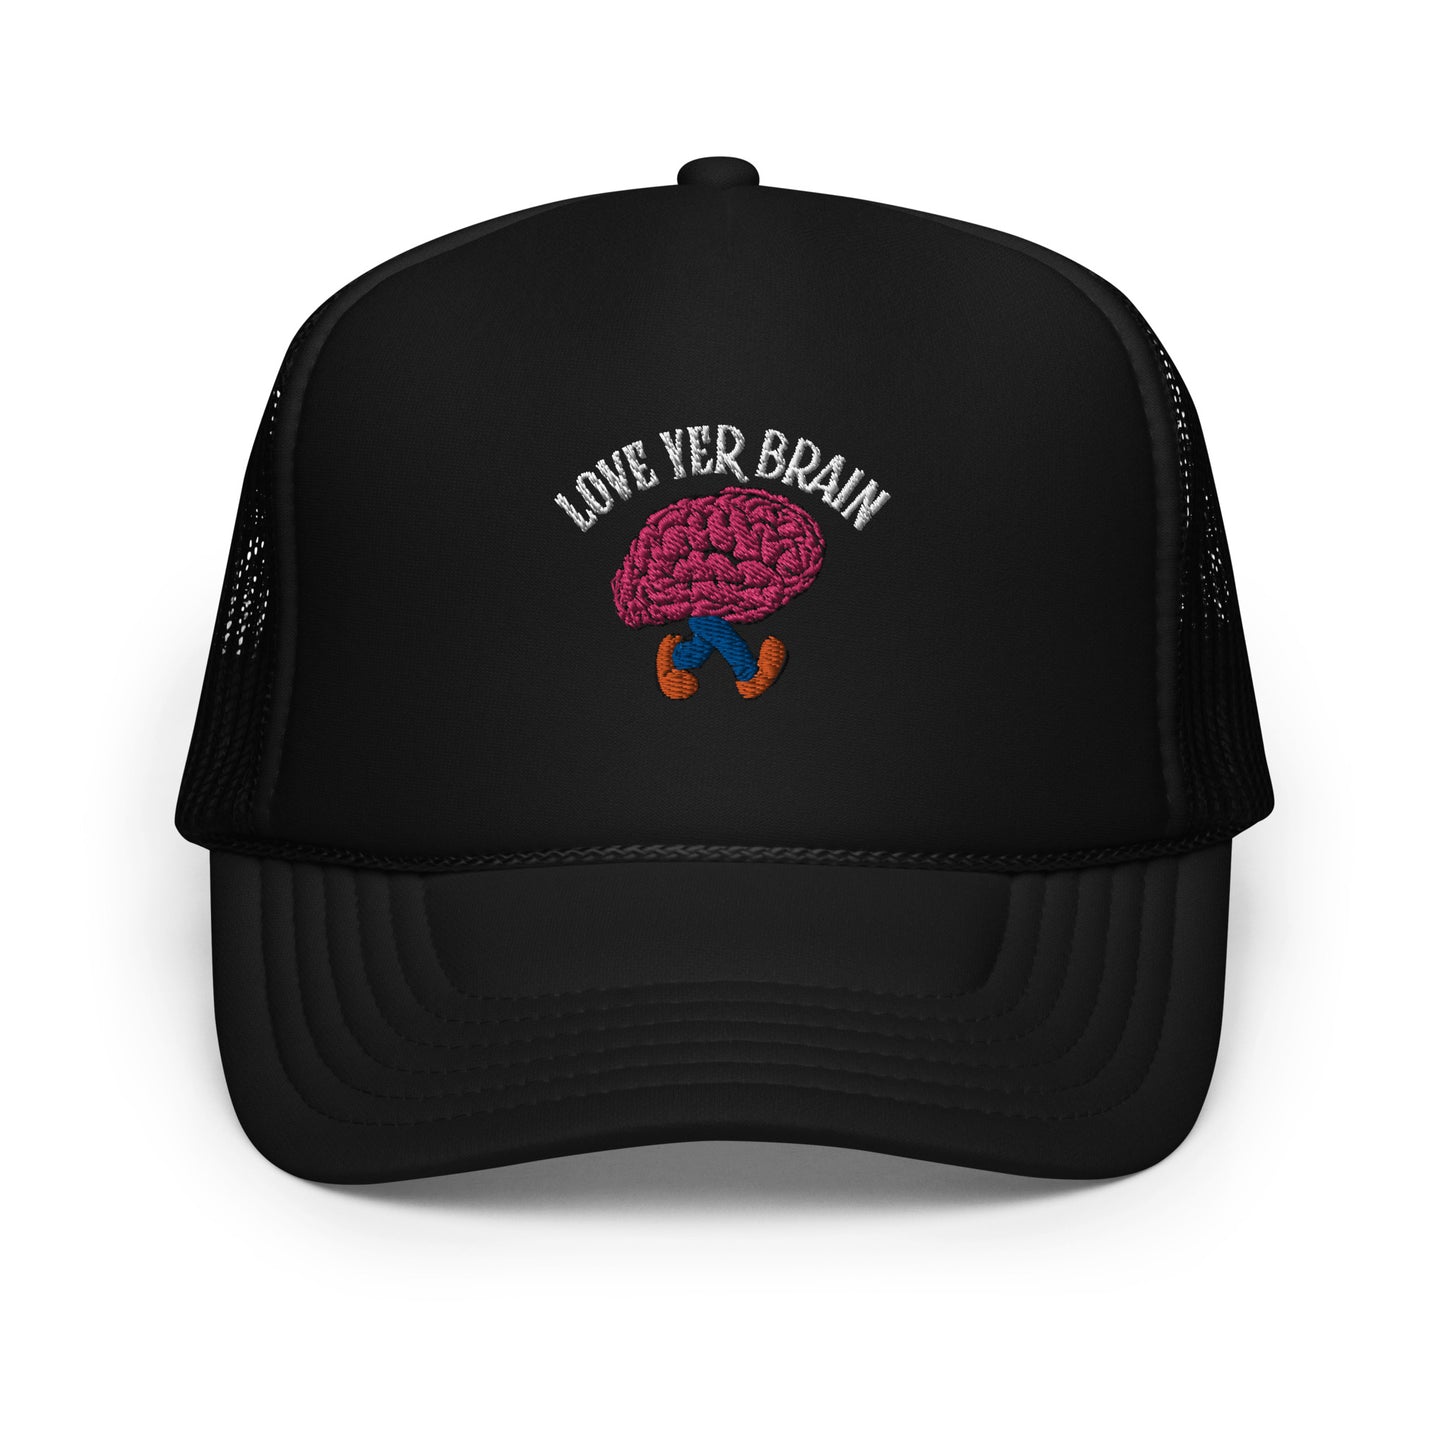 Love Yer Brain x This Old Engine Trucker Hat